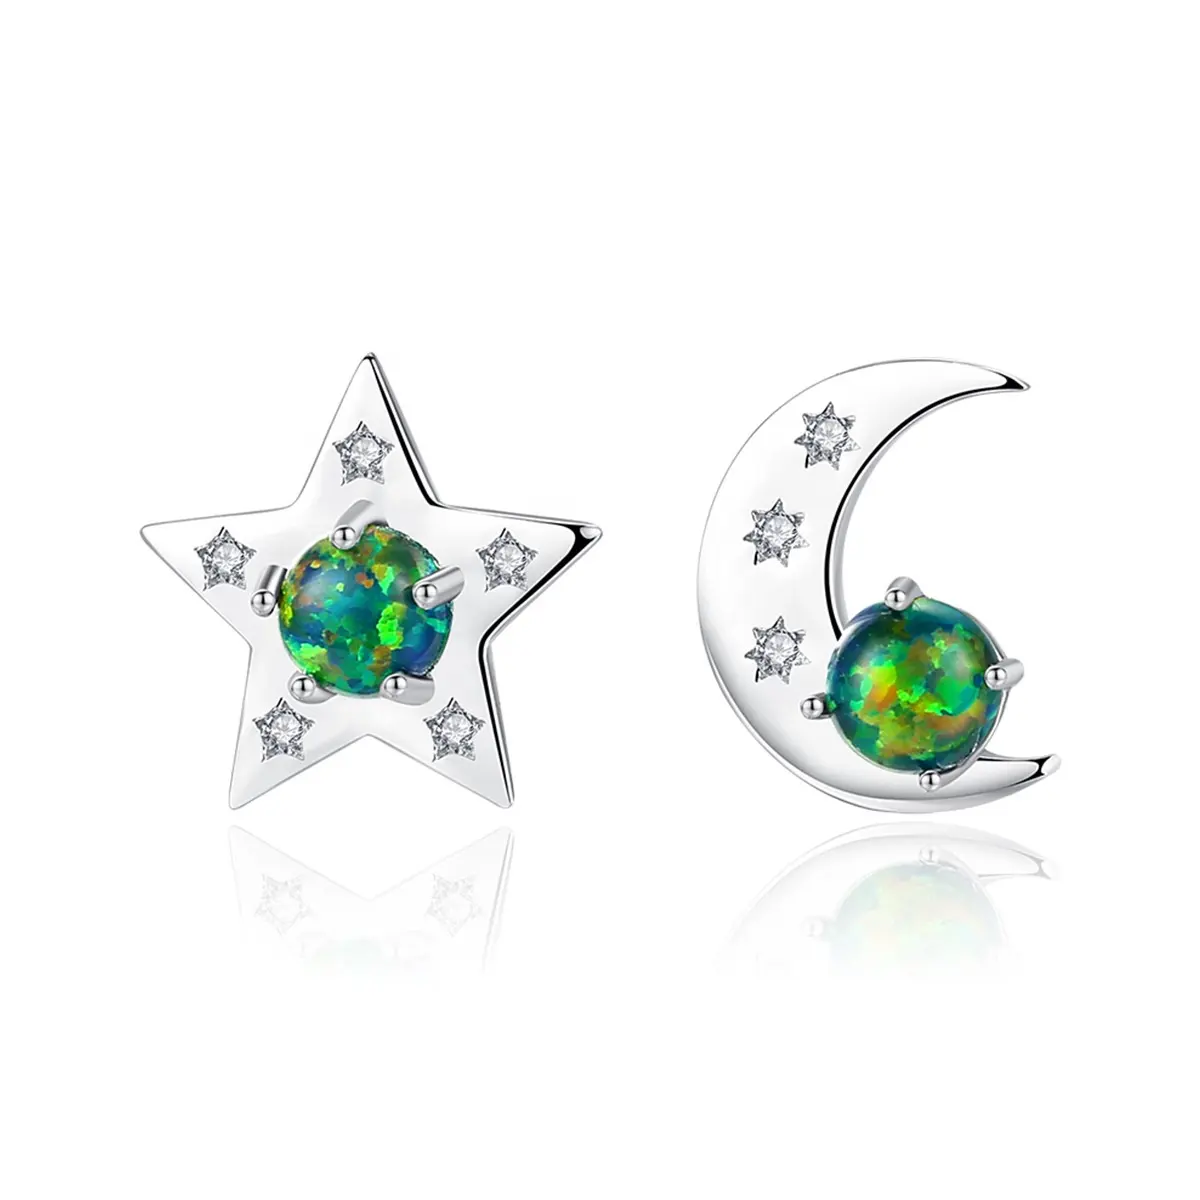 Boucles d'oreilles étoile d'usine Toderi Boucles d'oreilles délicates en argent 925 Boucles d'oreilles opale en plaqué or Boucles d'oreilles opale lune et étoile